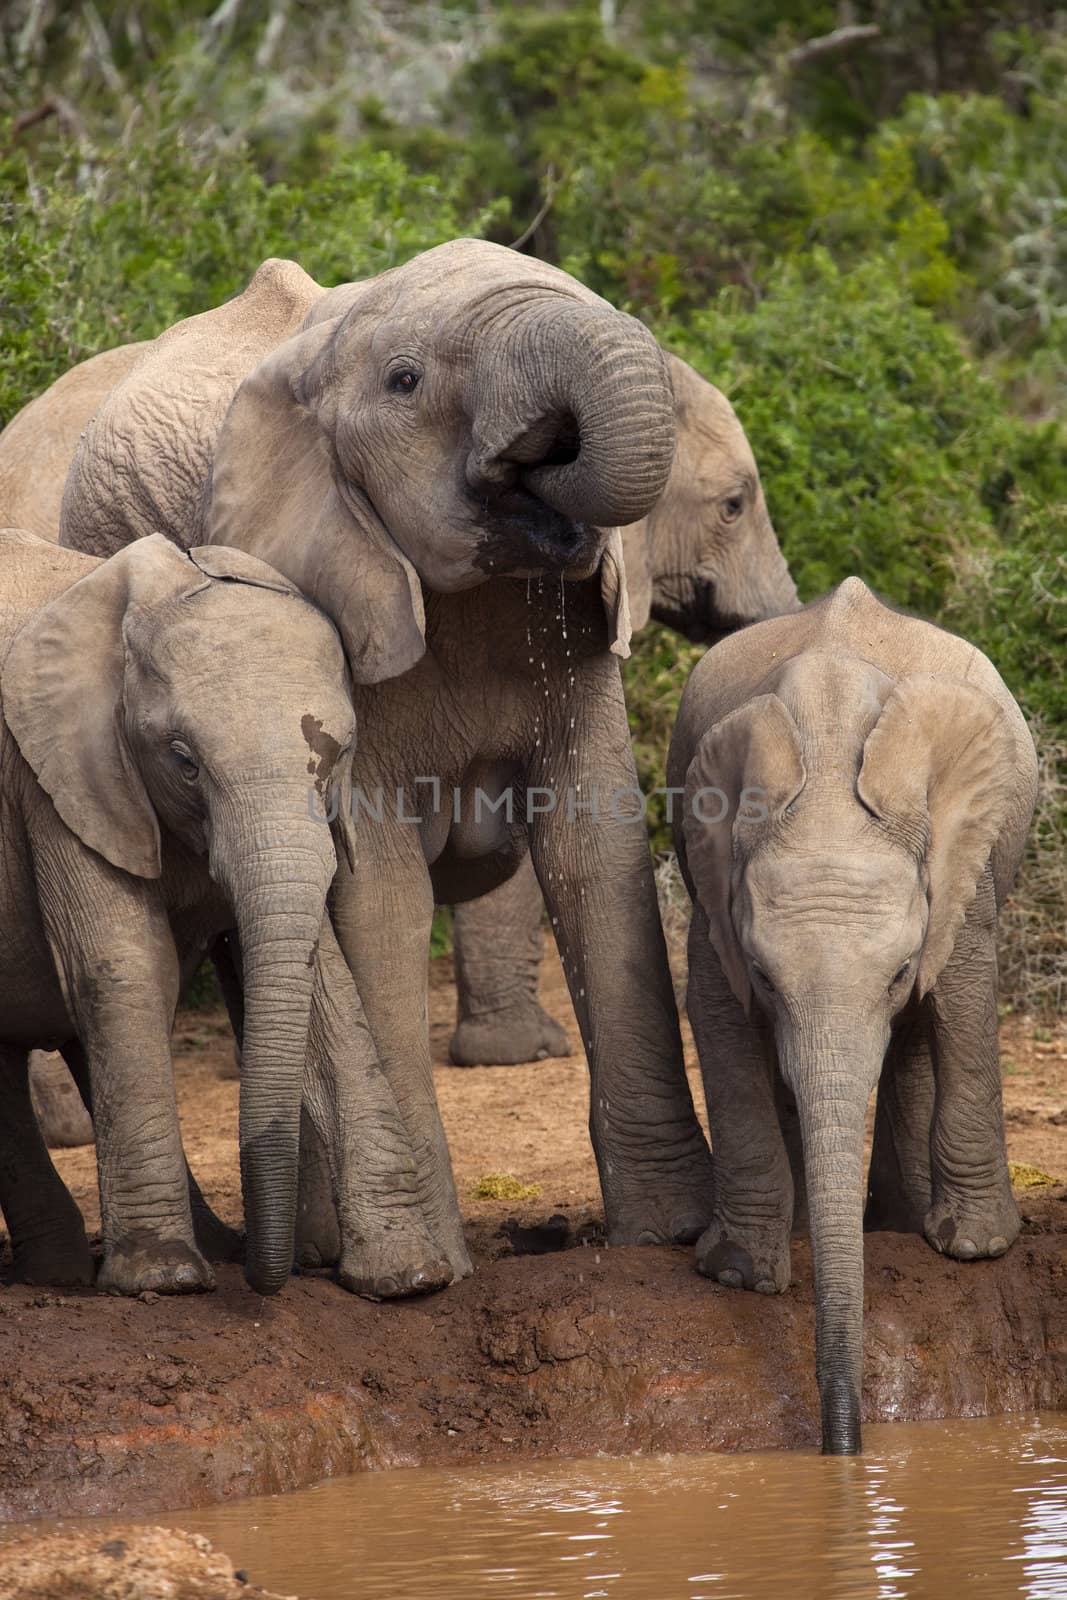 Elephant Family by nightowlza